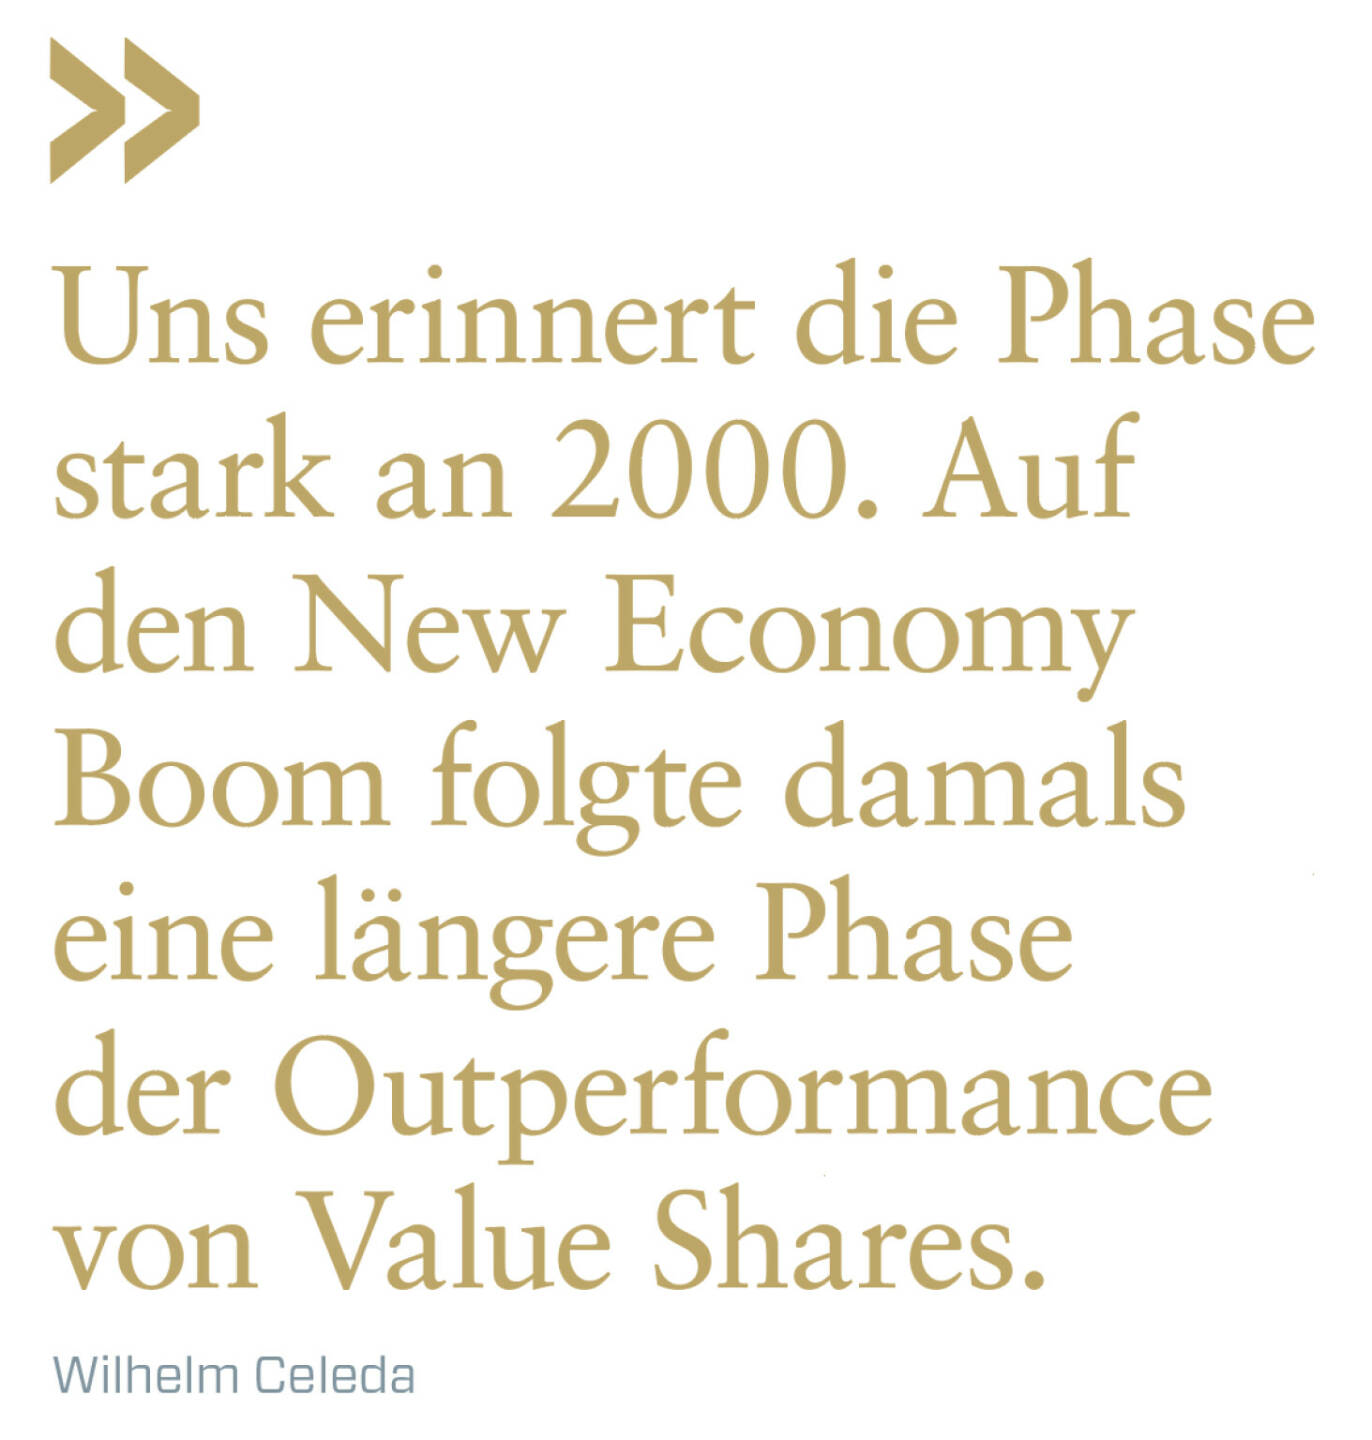 Uns erinnert die Phase stark an 2000. Auf den New Economy Boom folgte damals eine längere Phase der Outperformance von Value Shares.
Wilhelm Celeda 